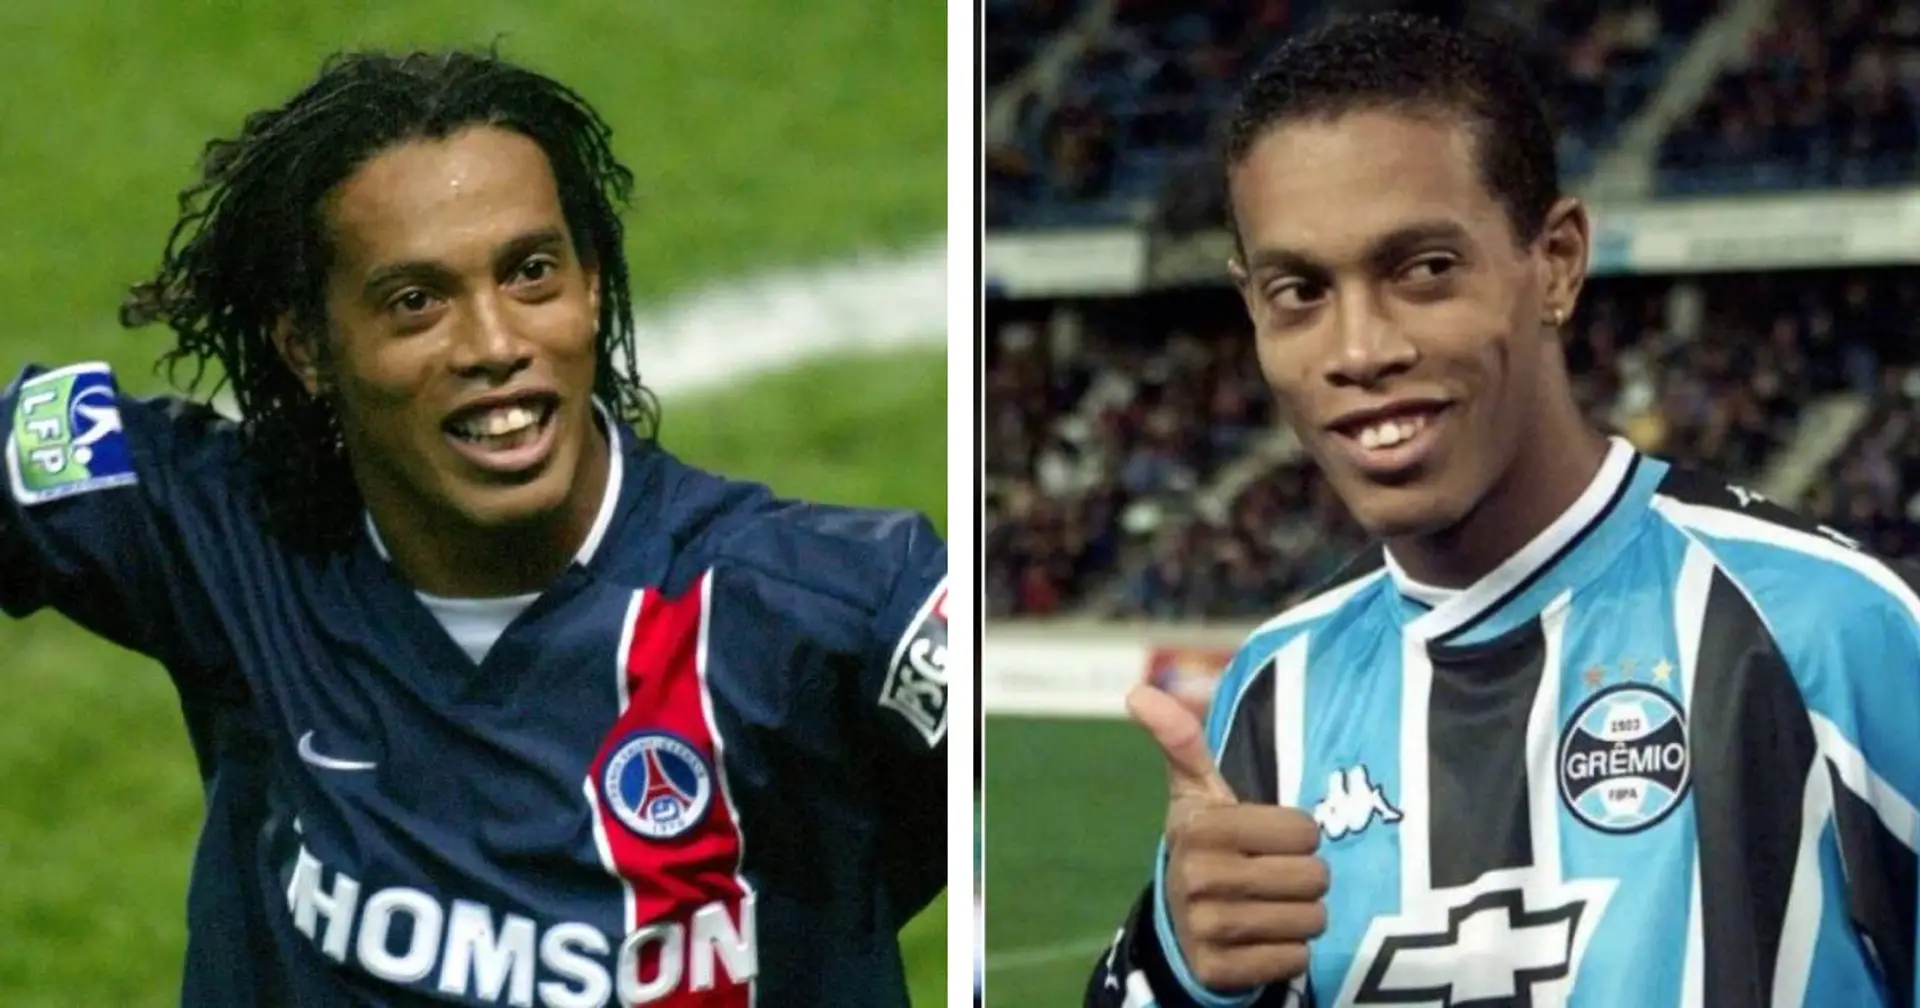 Pourquoi les fans du Gremio détestent-ils absolument Ronaldinho ? Ca a un lien direct avec le PSG